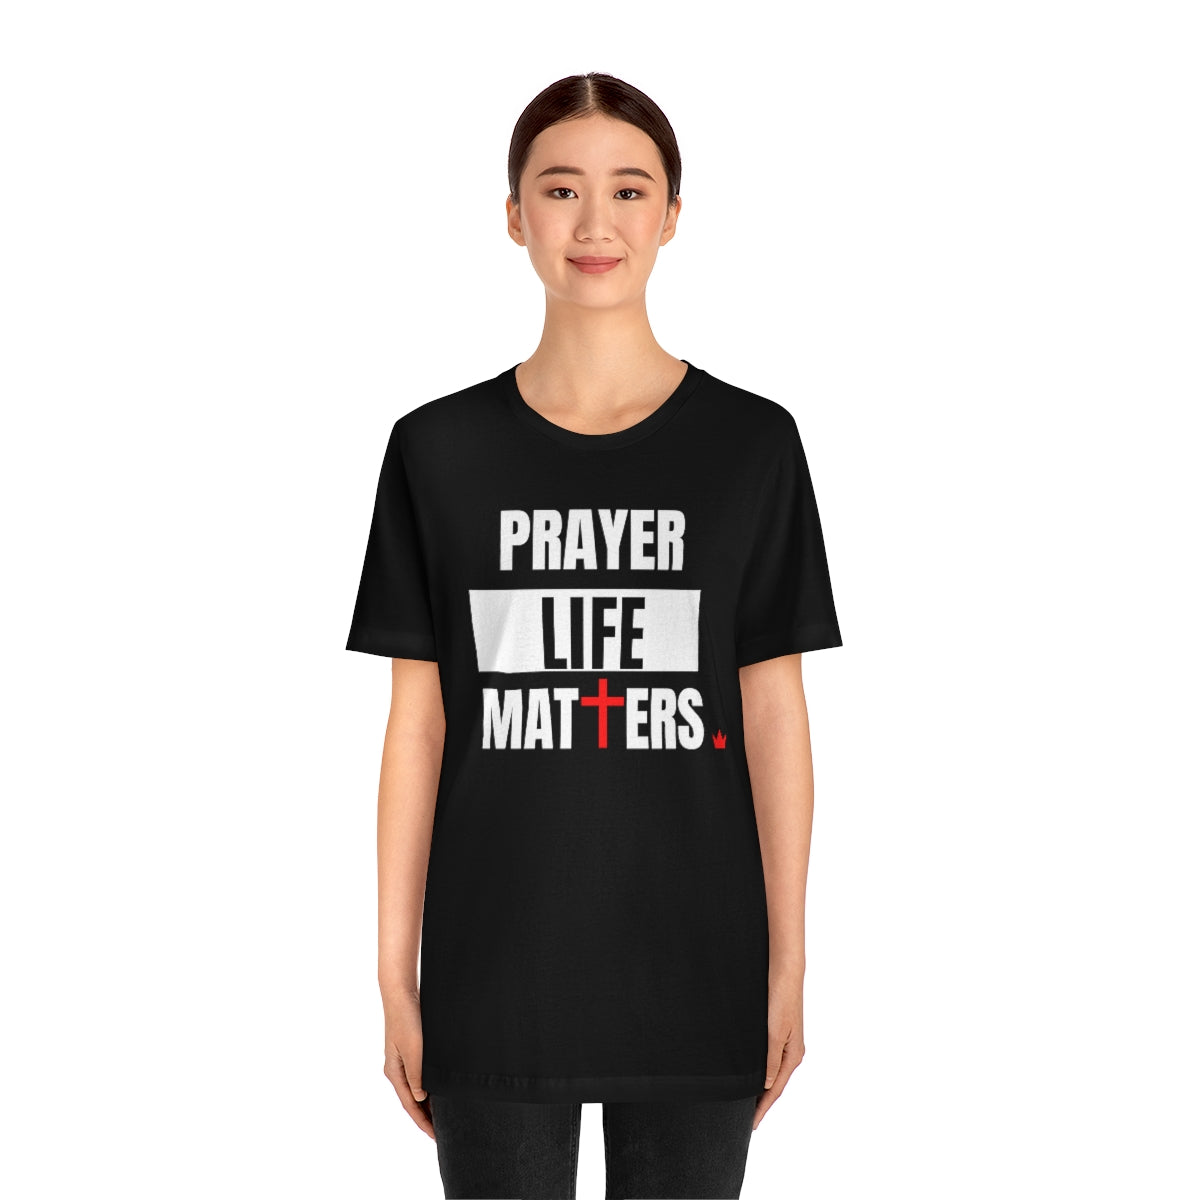 Prayer Life Matters Unisex Short Sleeve T-Shirt